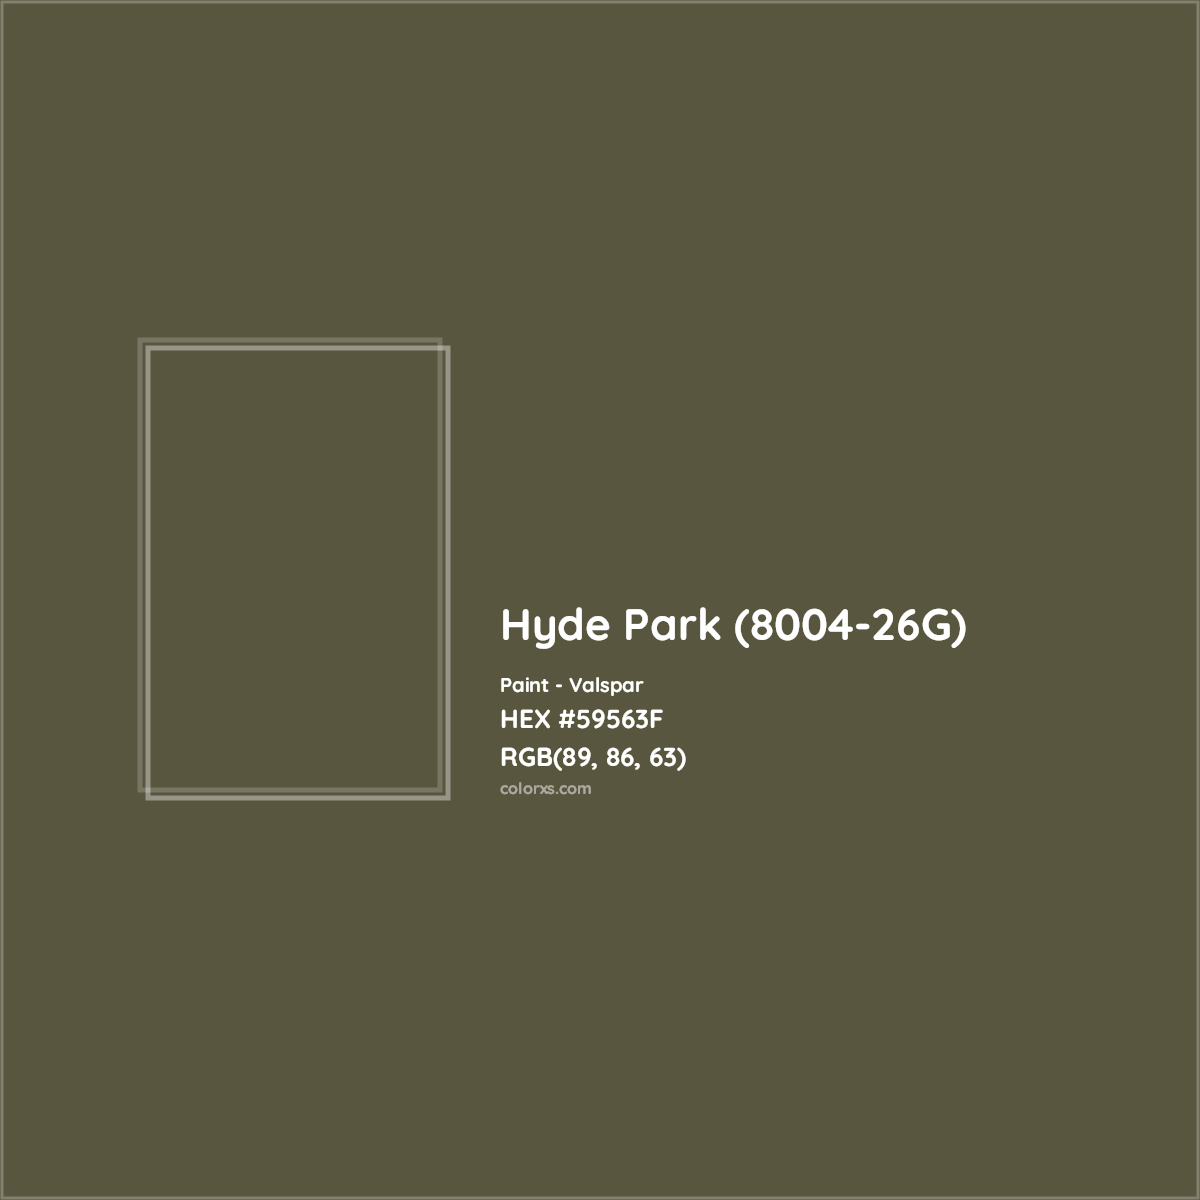 HEX #59563F Hyde Park (8004-26G) Paint Valspar - Color Code